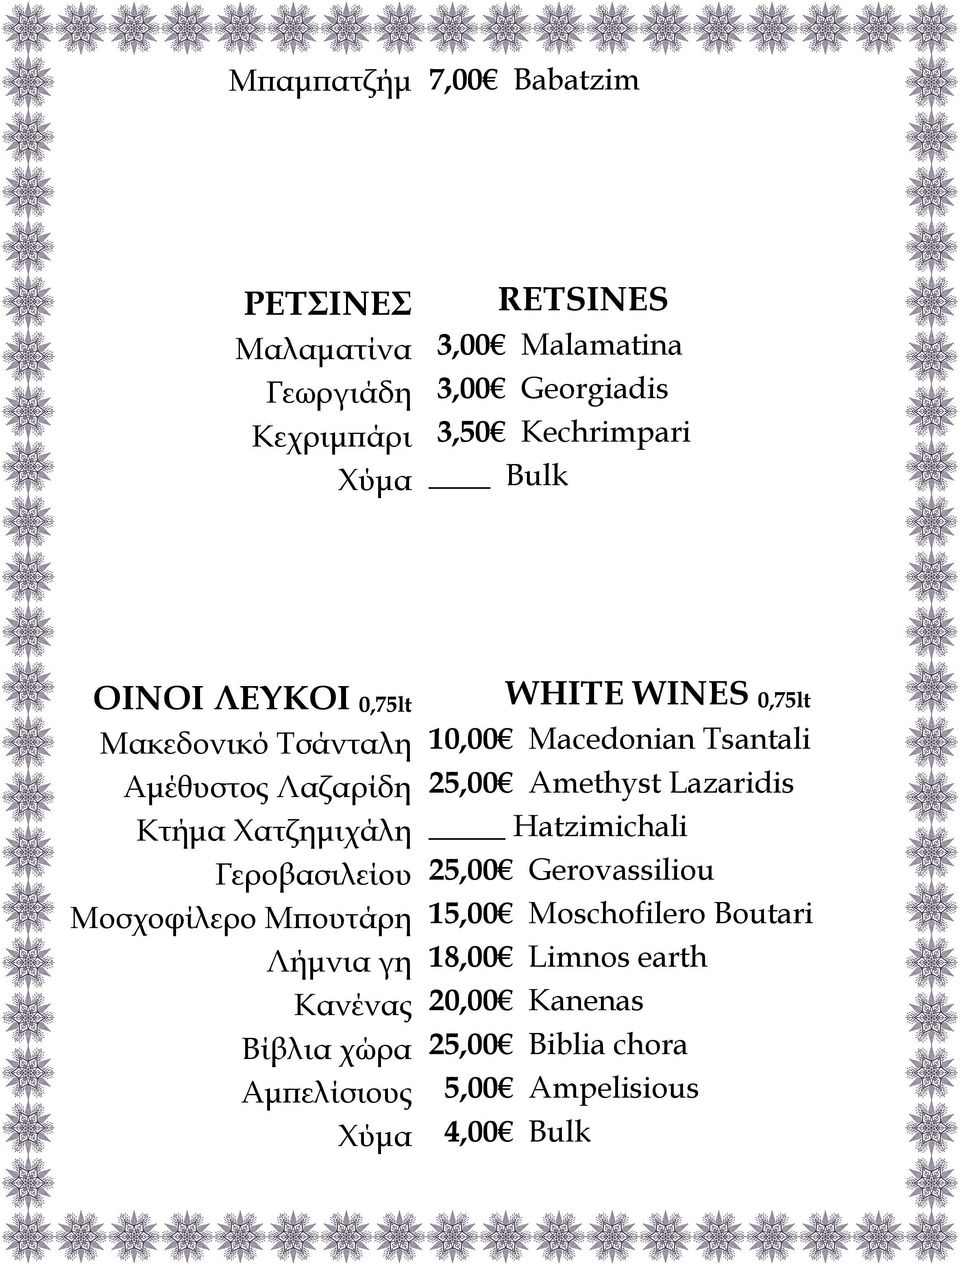 Μπουτάρη Λήμνια γη Κανένας Βίβλια χώρα Αμπελίσιους Χύμα WHITE WINES 0,75lt 10,00 Macedonian Tsantali 25,00 Amethyst Lazaridis